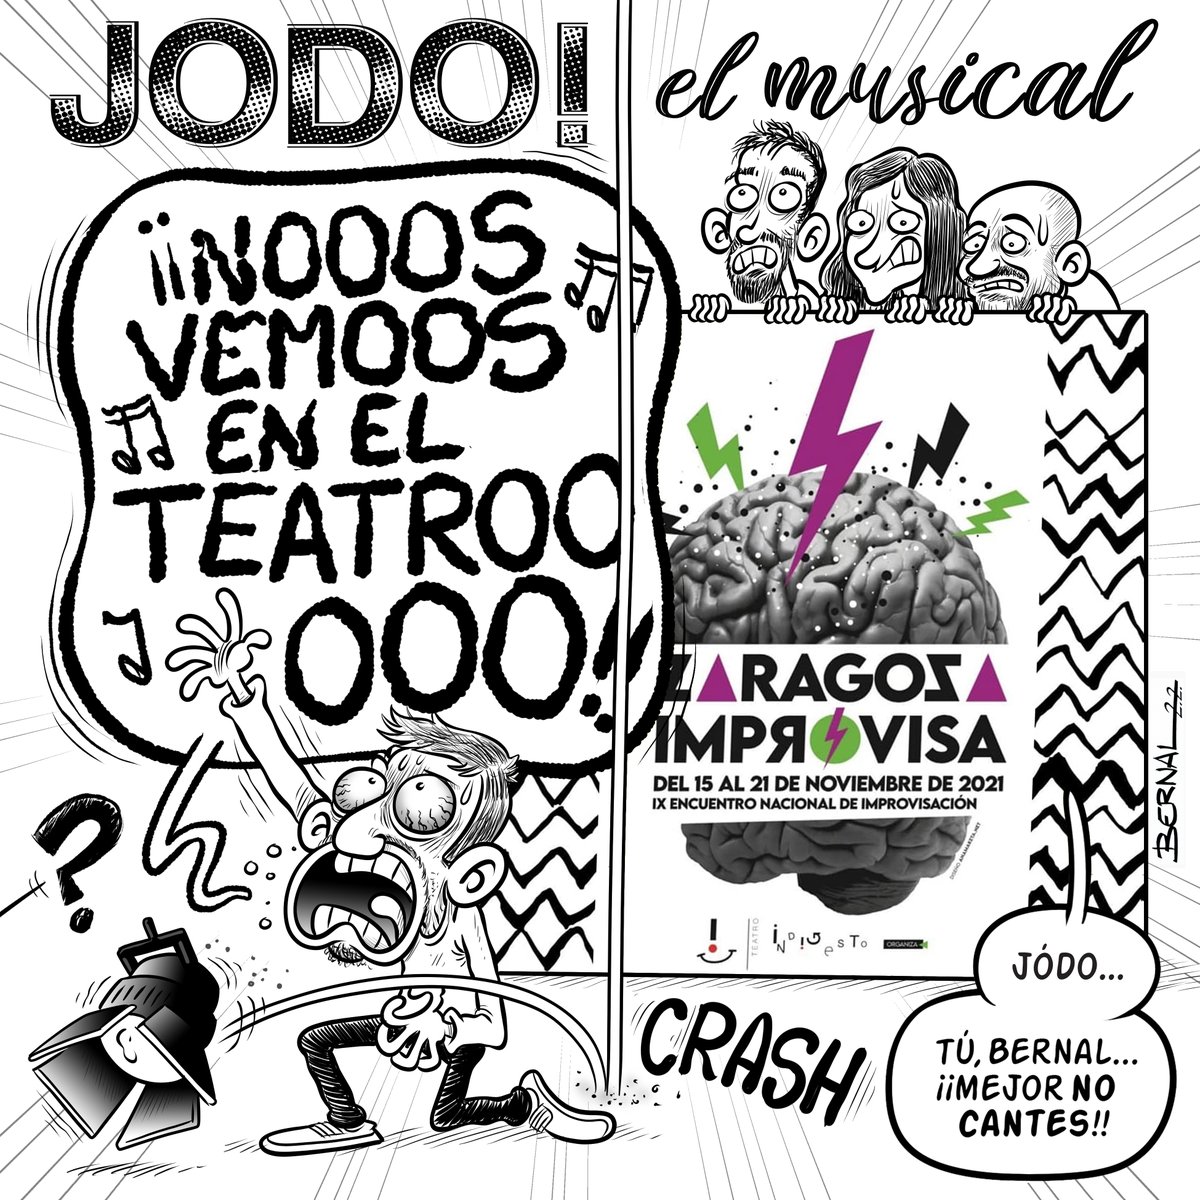 Mañana miércoles, a las 20:00h, bien de risas con los genios de la IMPRO y el @TeatroIndigesto en el @teatromercado. 

JODO!! el musical...